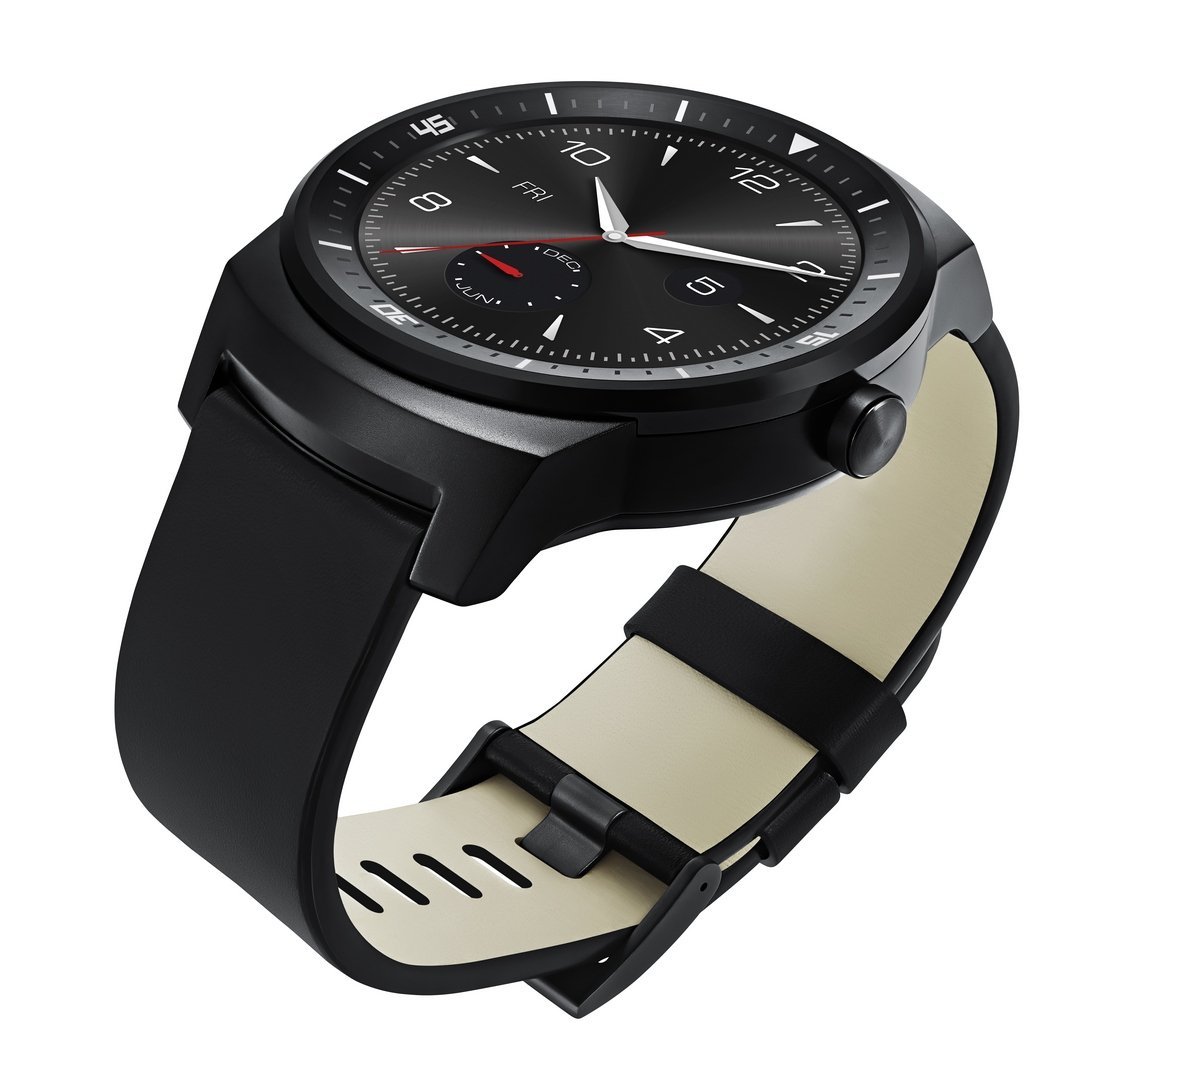 LG’s New G Watch R Goes on Sale in the U.K.